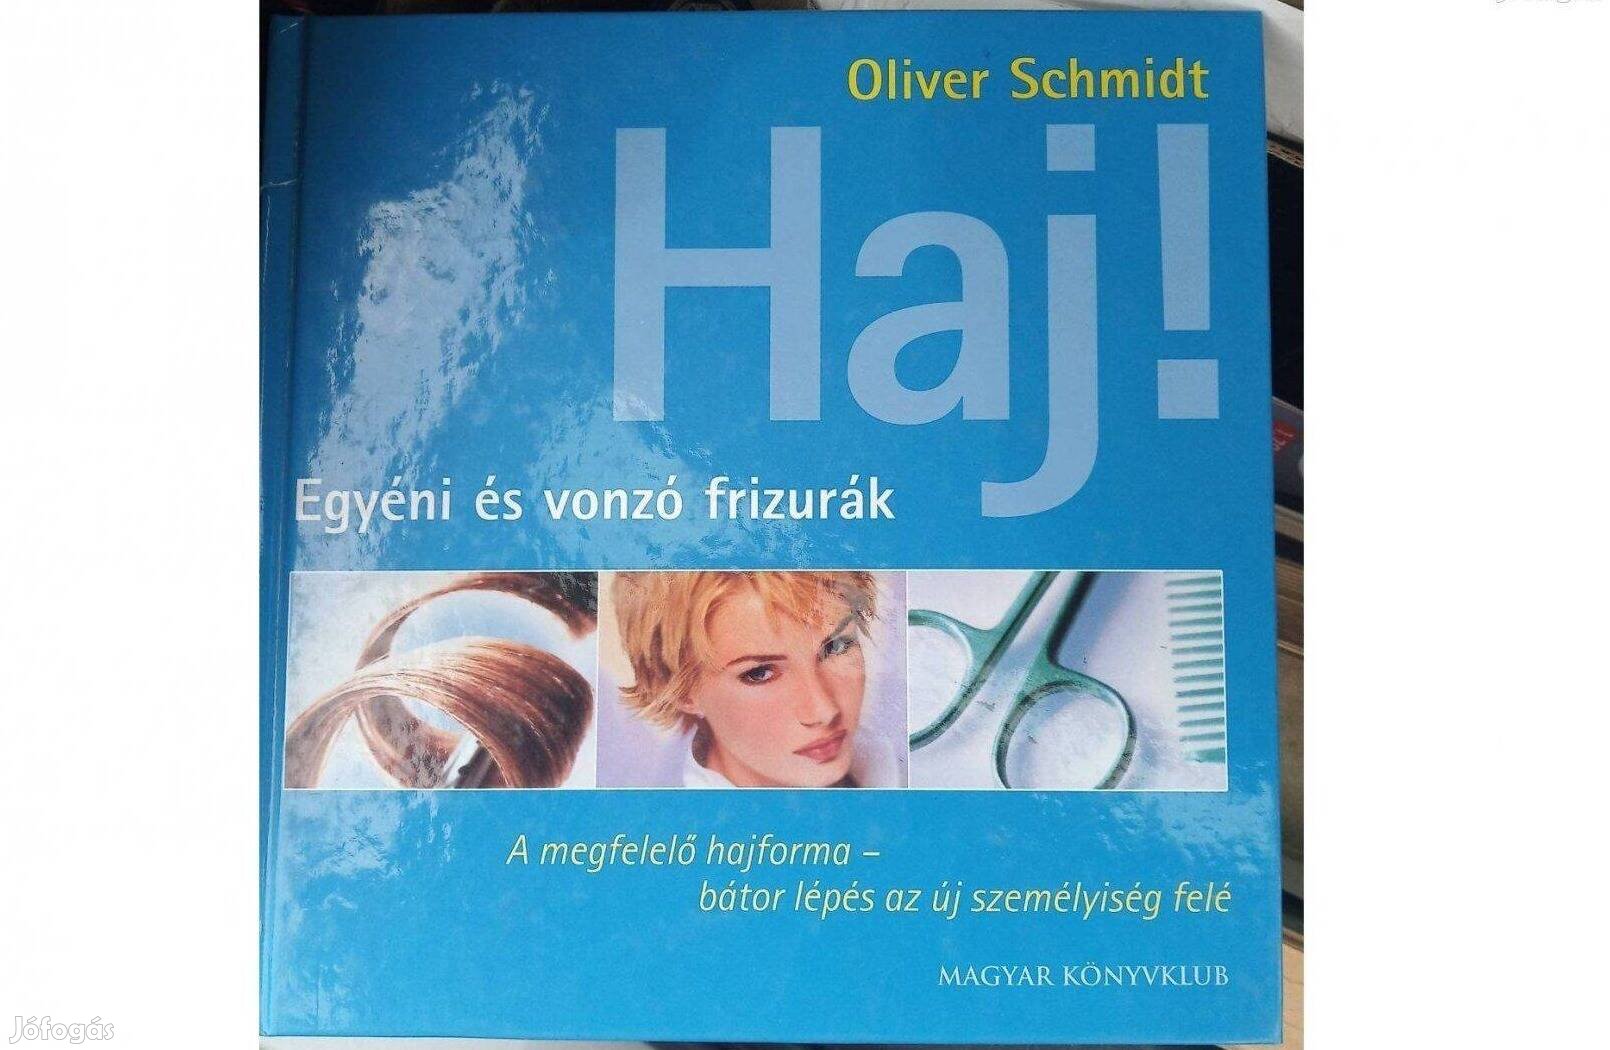 Oliver Schmidt - Haj! című könyve.Egyéni és vonzó frizurák